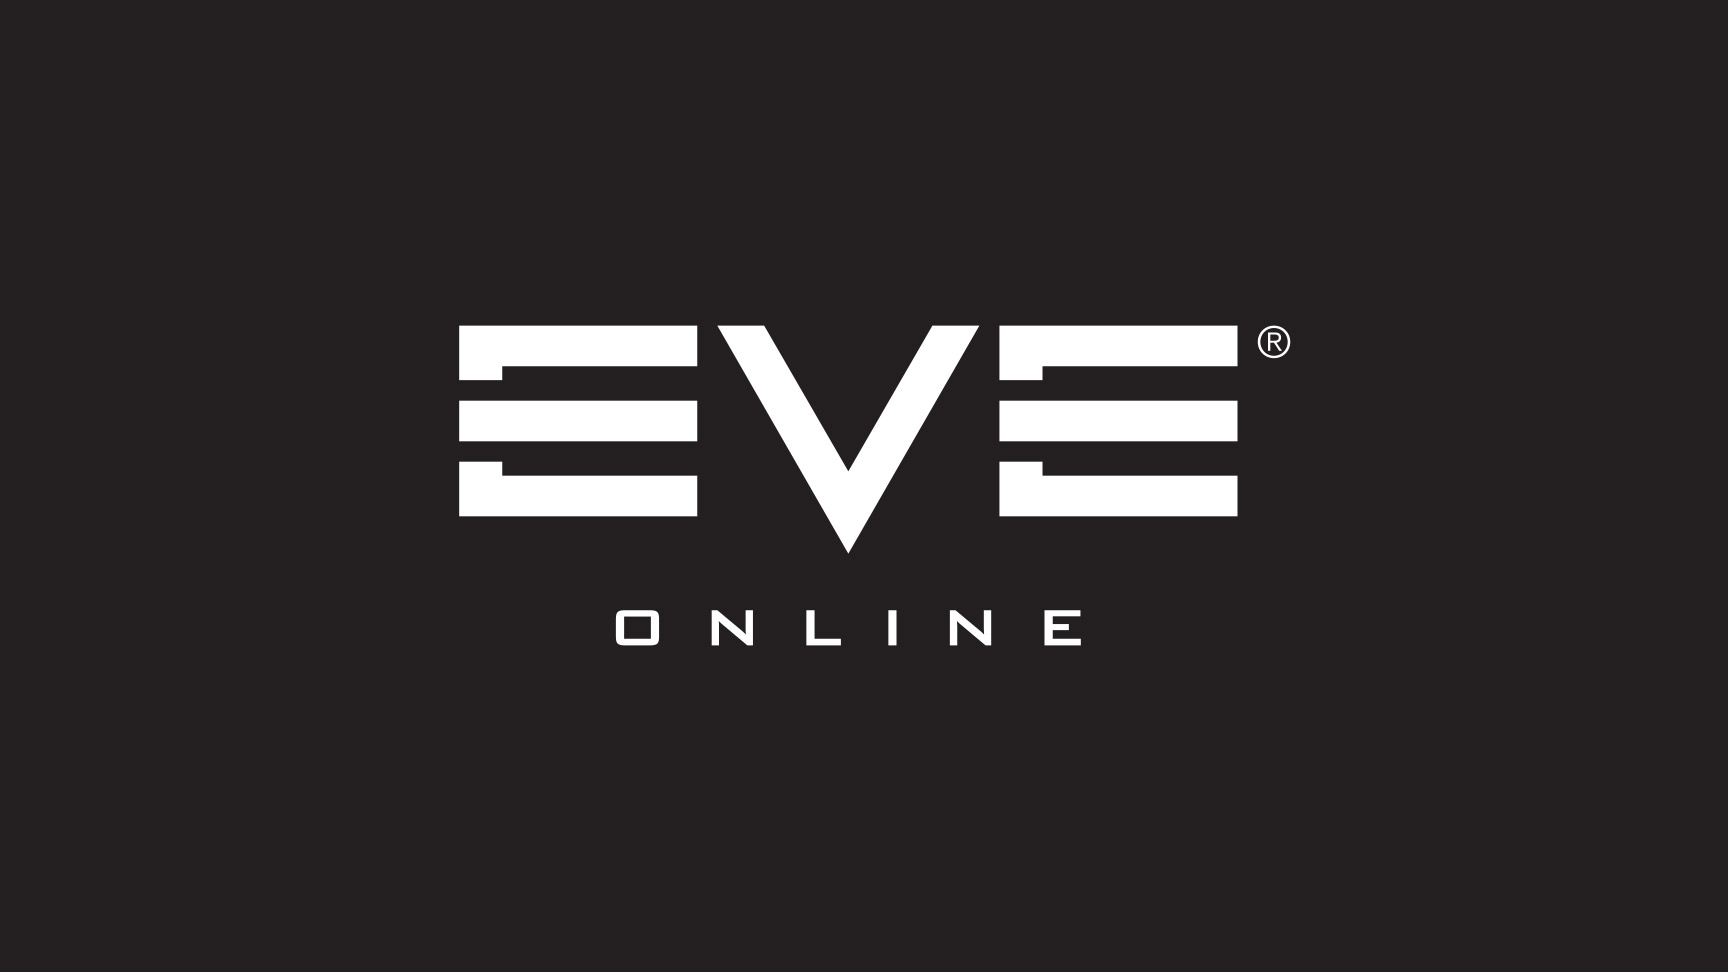 v-eve-online-poyavitsya-vozmozhnost-integrirovat-dannye-v-excel-tablicy-logo